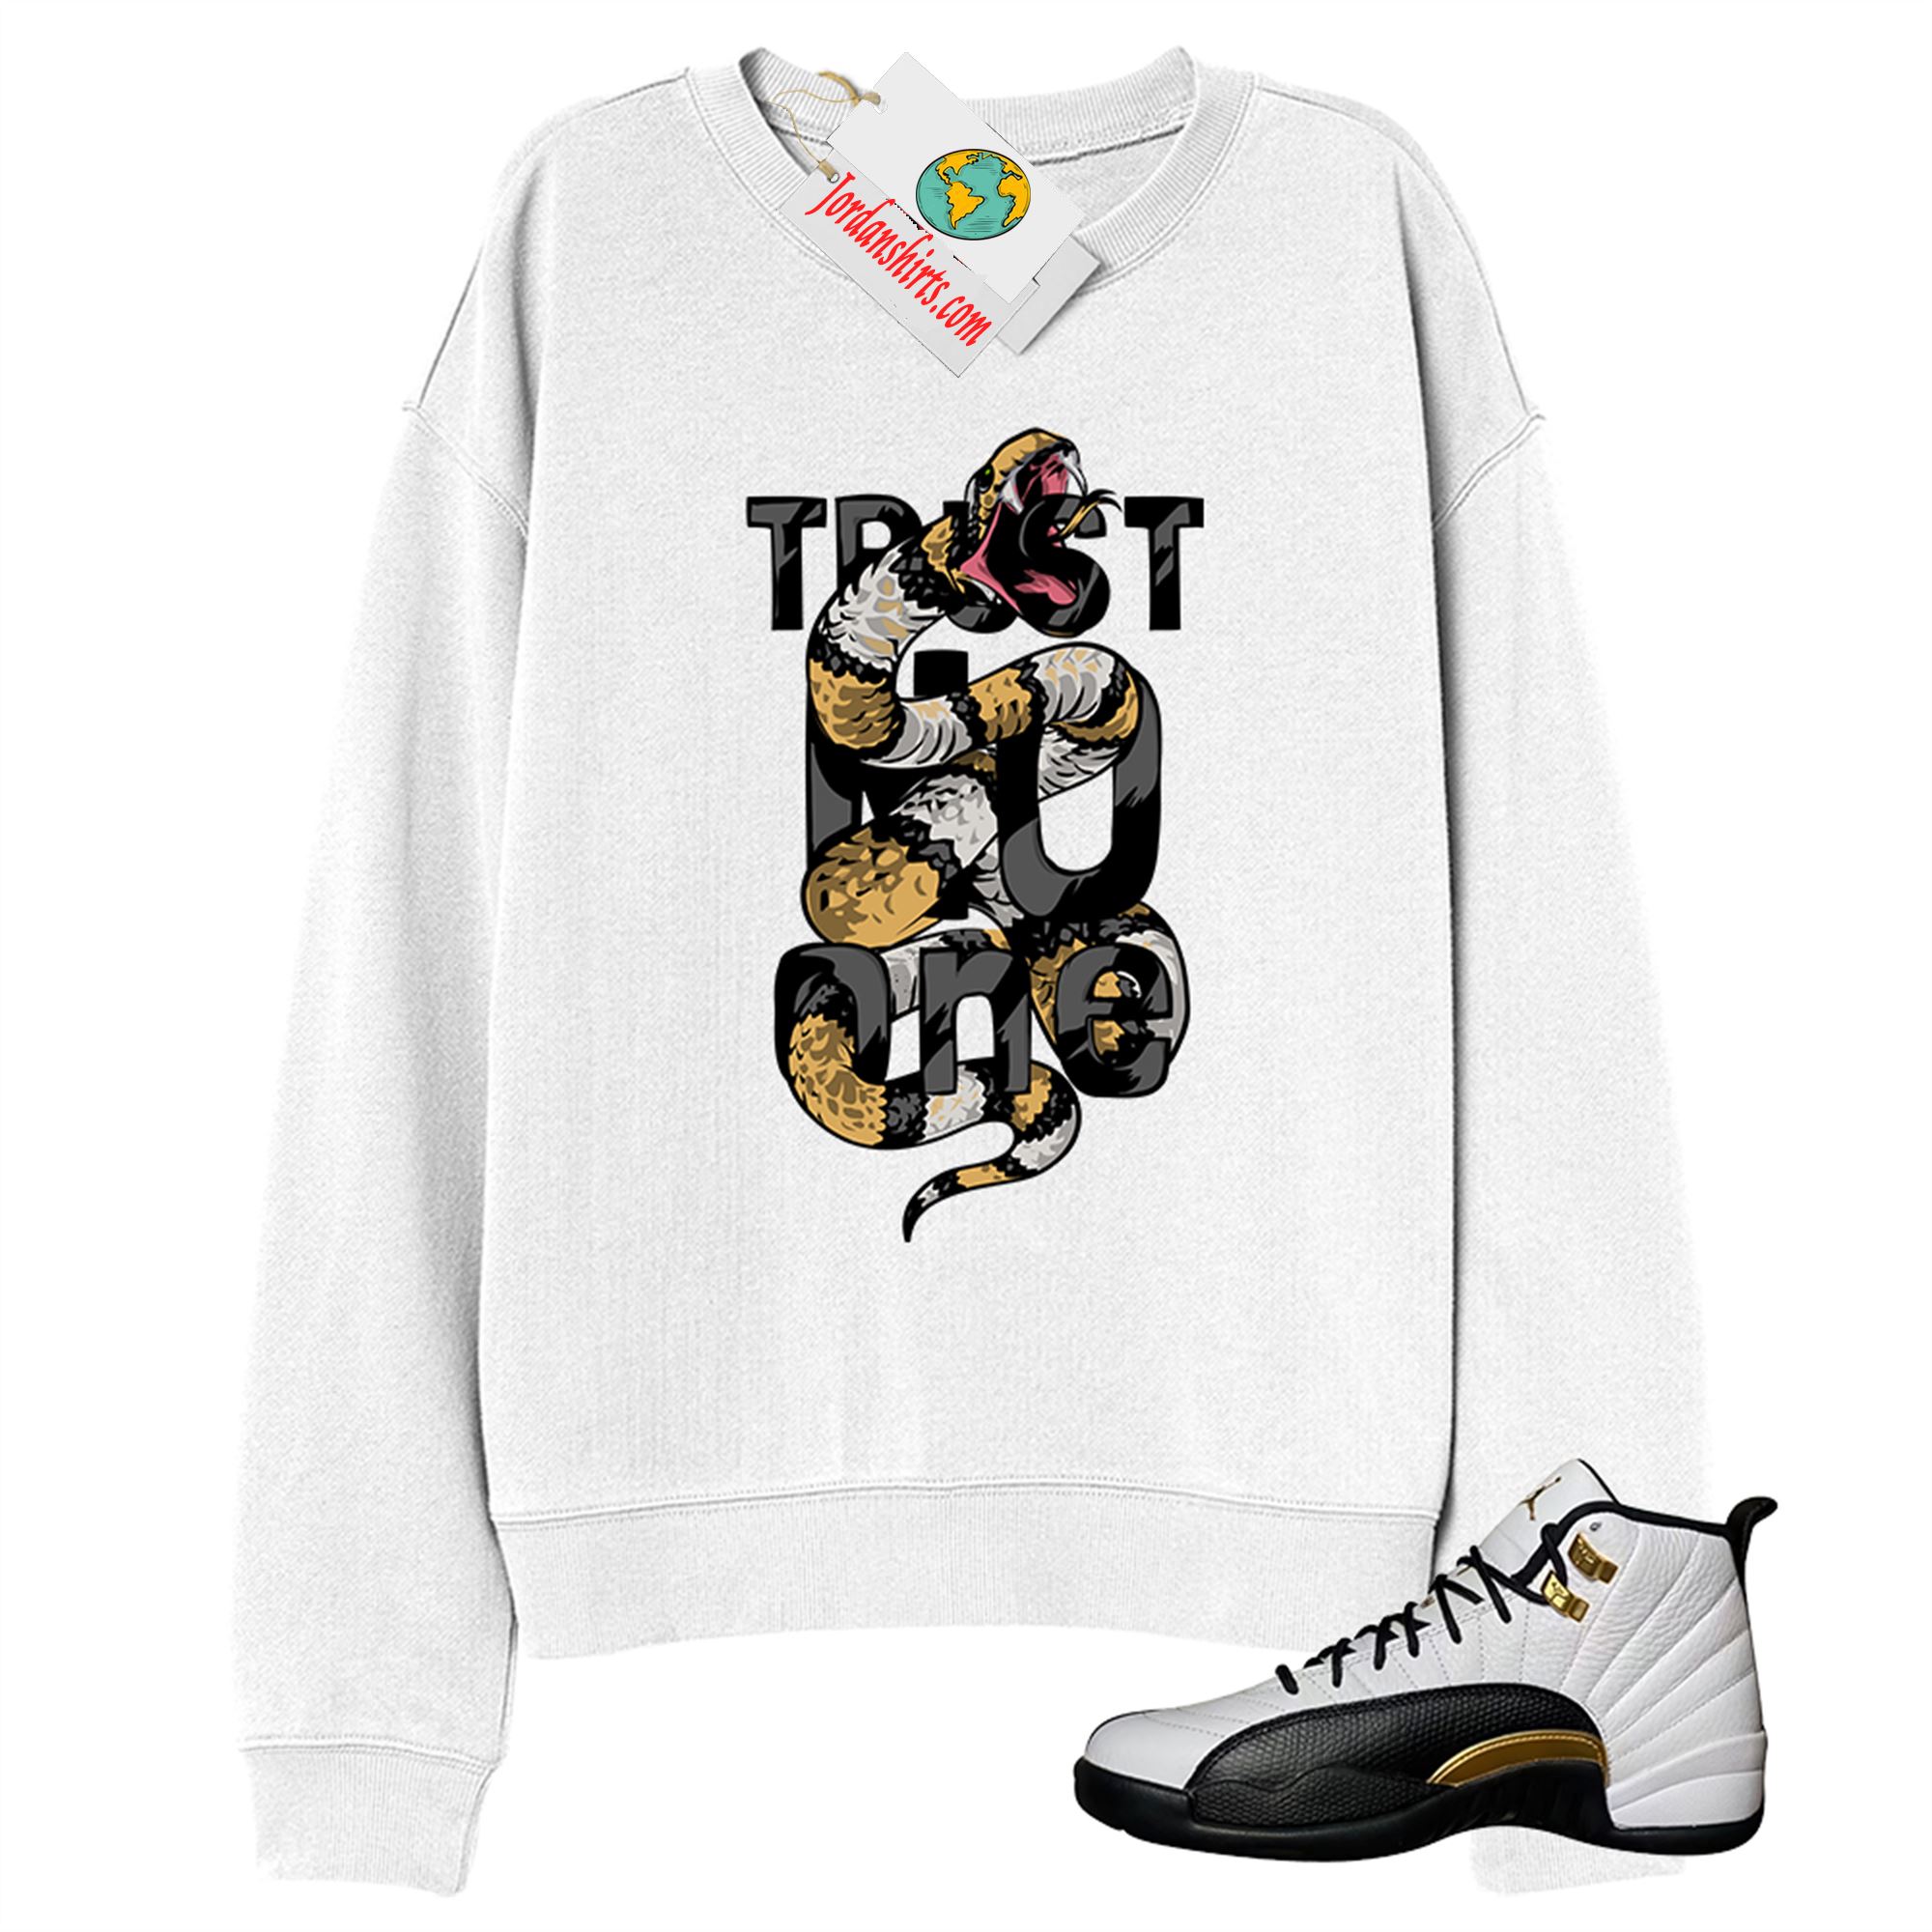 Jordan 12 Sweatshirt, Trust No One King Snake White Sweatshirt Air Jordan 12 Royalty 12s Size Up To 5xl